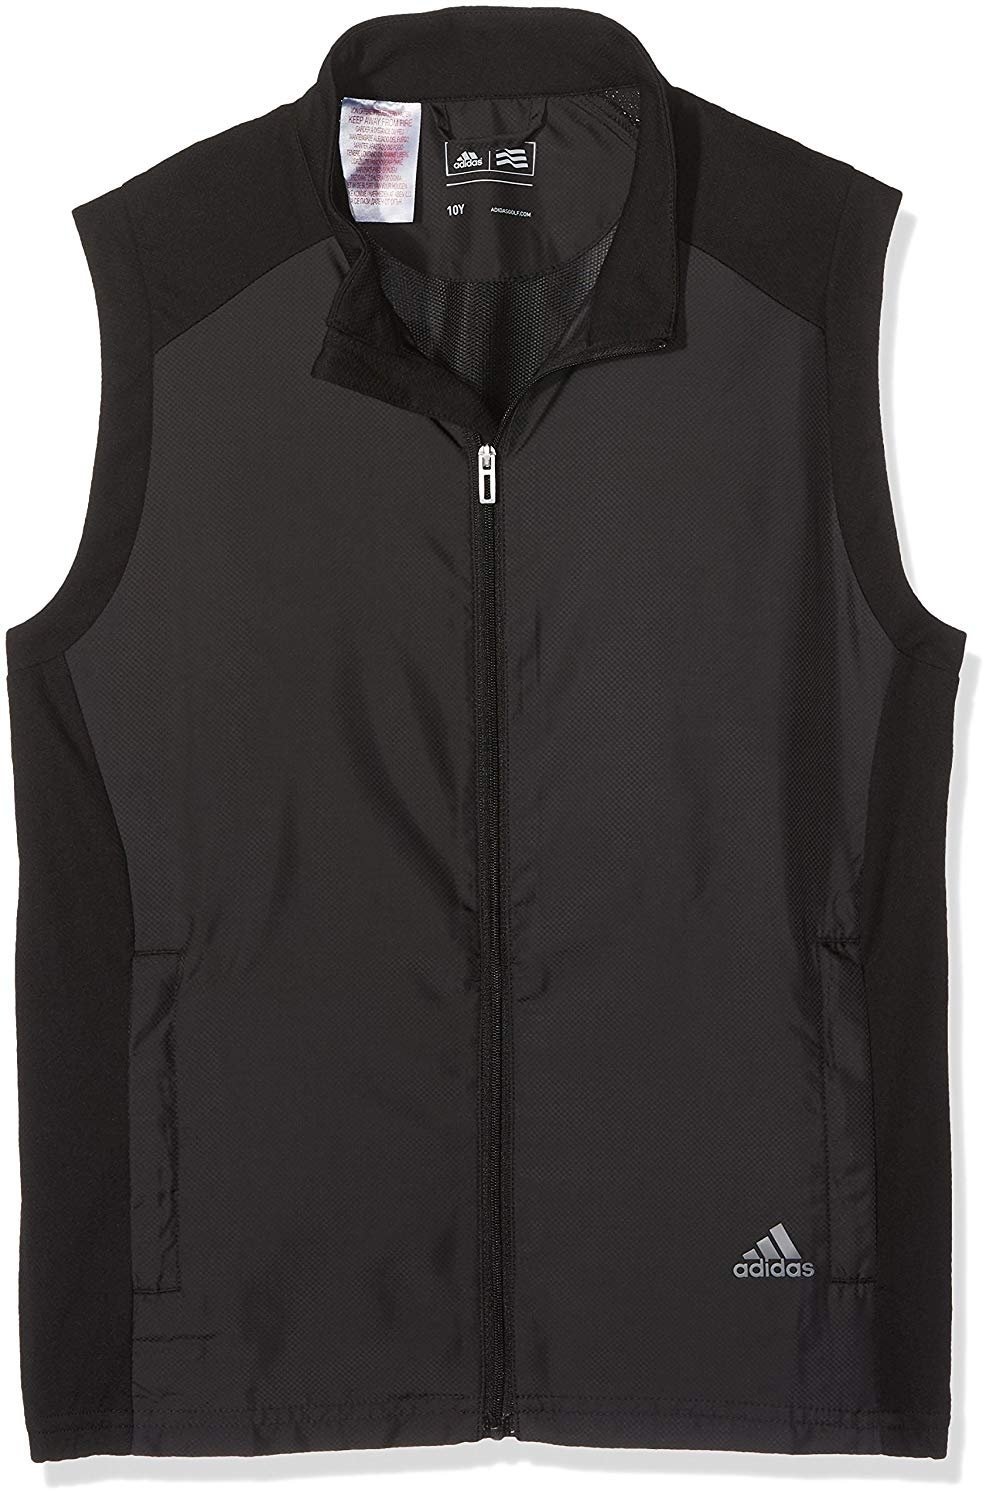 Gilet Adidas Performance Junior Vest Black 12Y